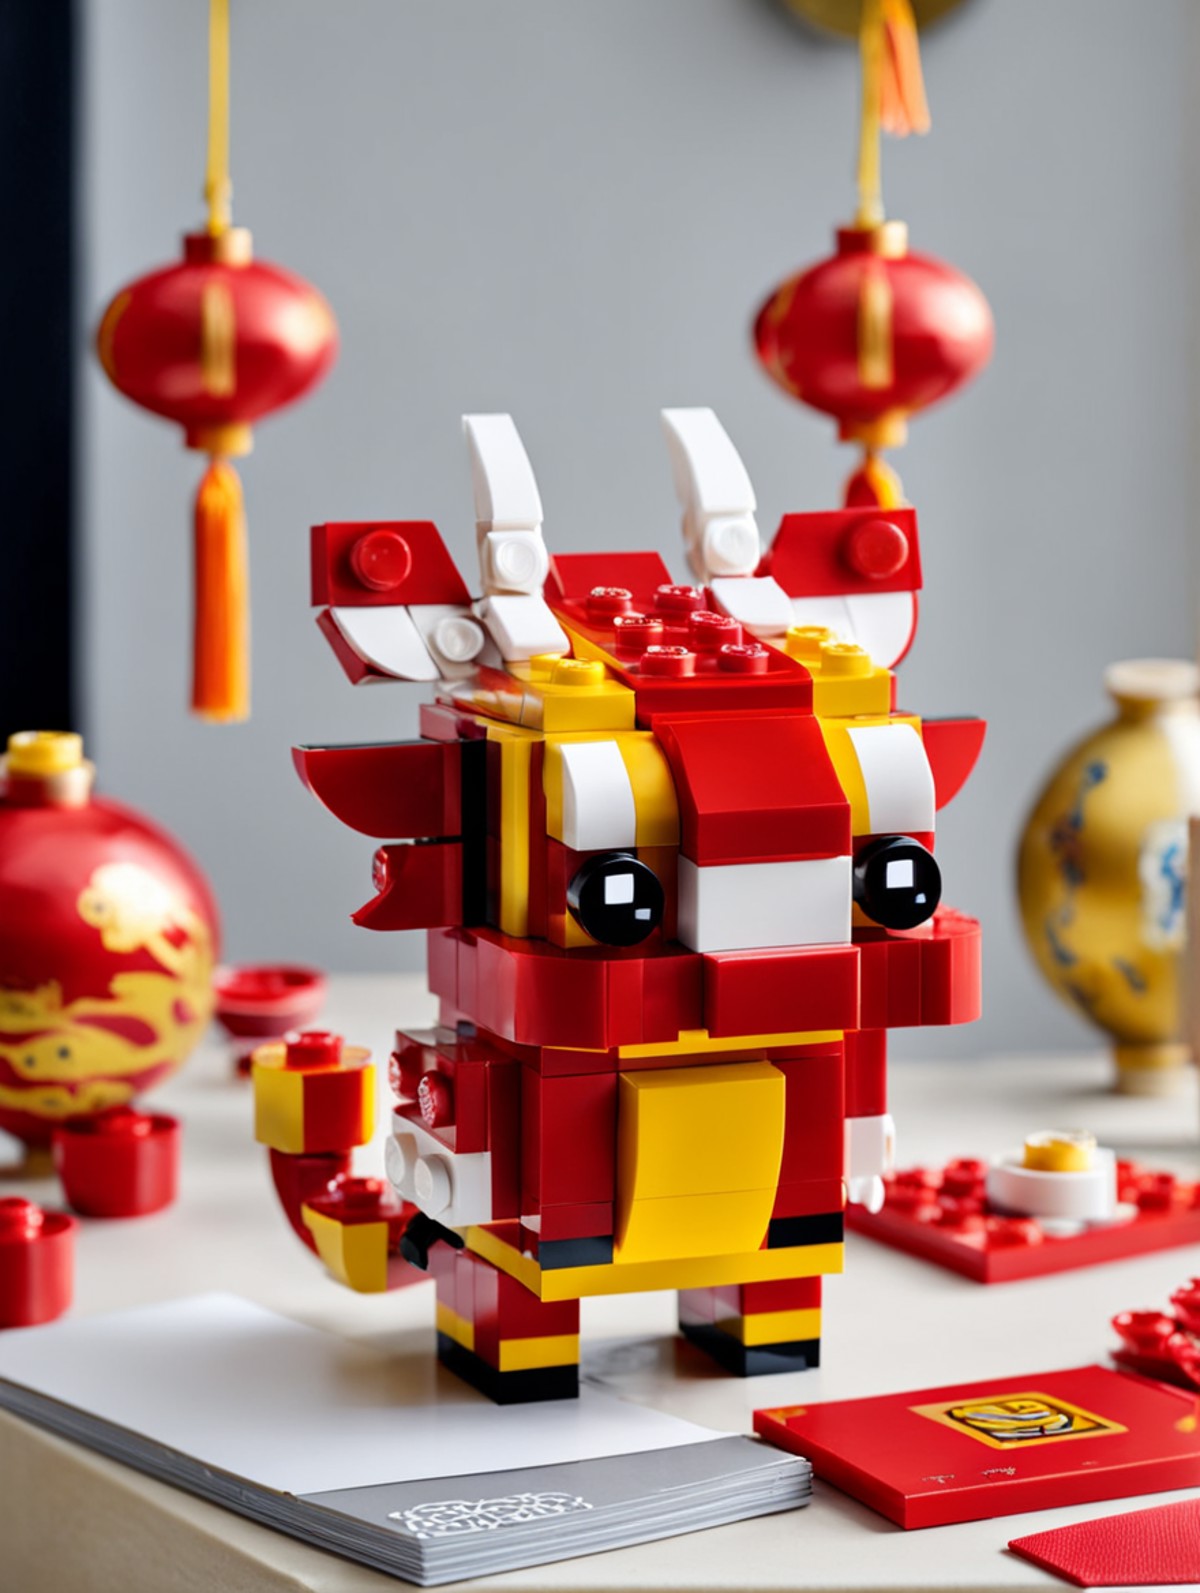 <lora:Lego_XL_v2.1:0.8>
LEGO BrickHeadz, a red chinese dragon in a lunar new year